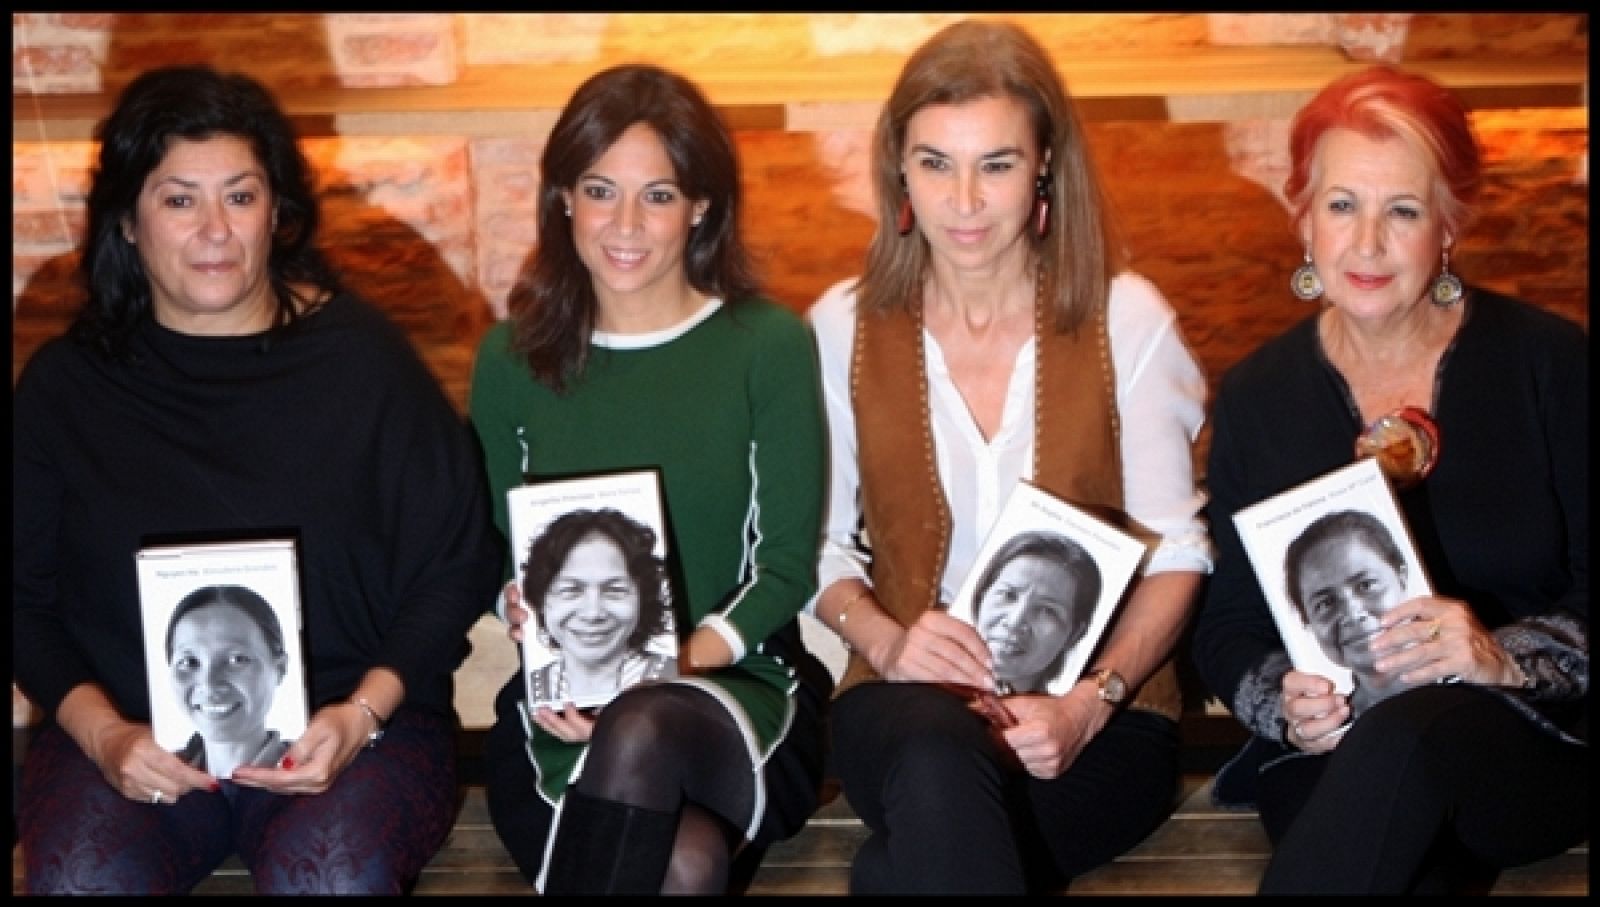 Almudena grandes, Mara Torres, CArmen Posadas y Rosa Mª Calaf prsentan sus libros en la campaña "Vidas en progreso"